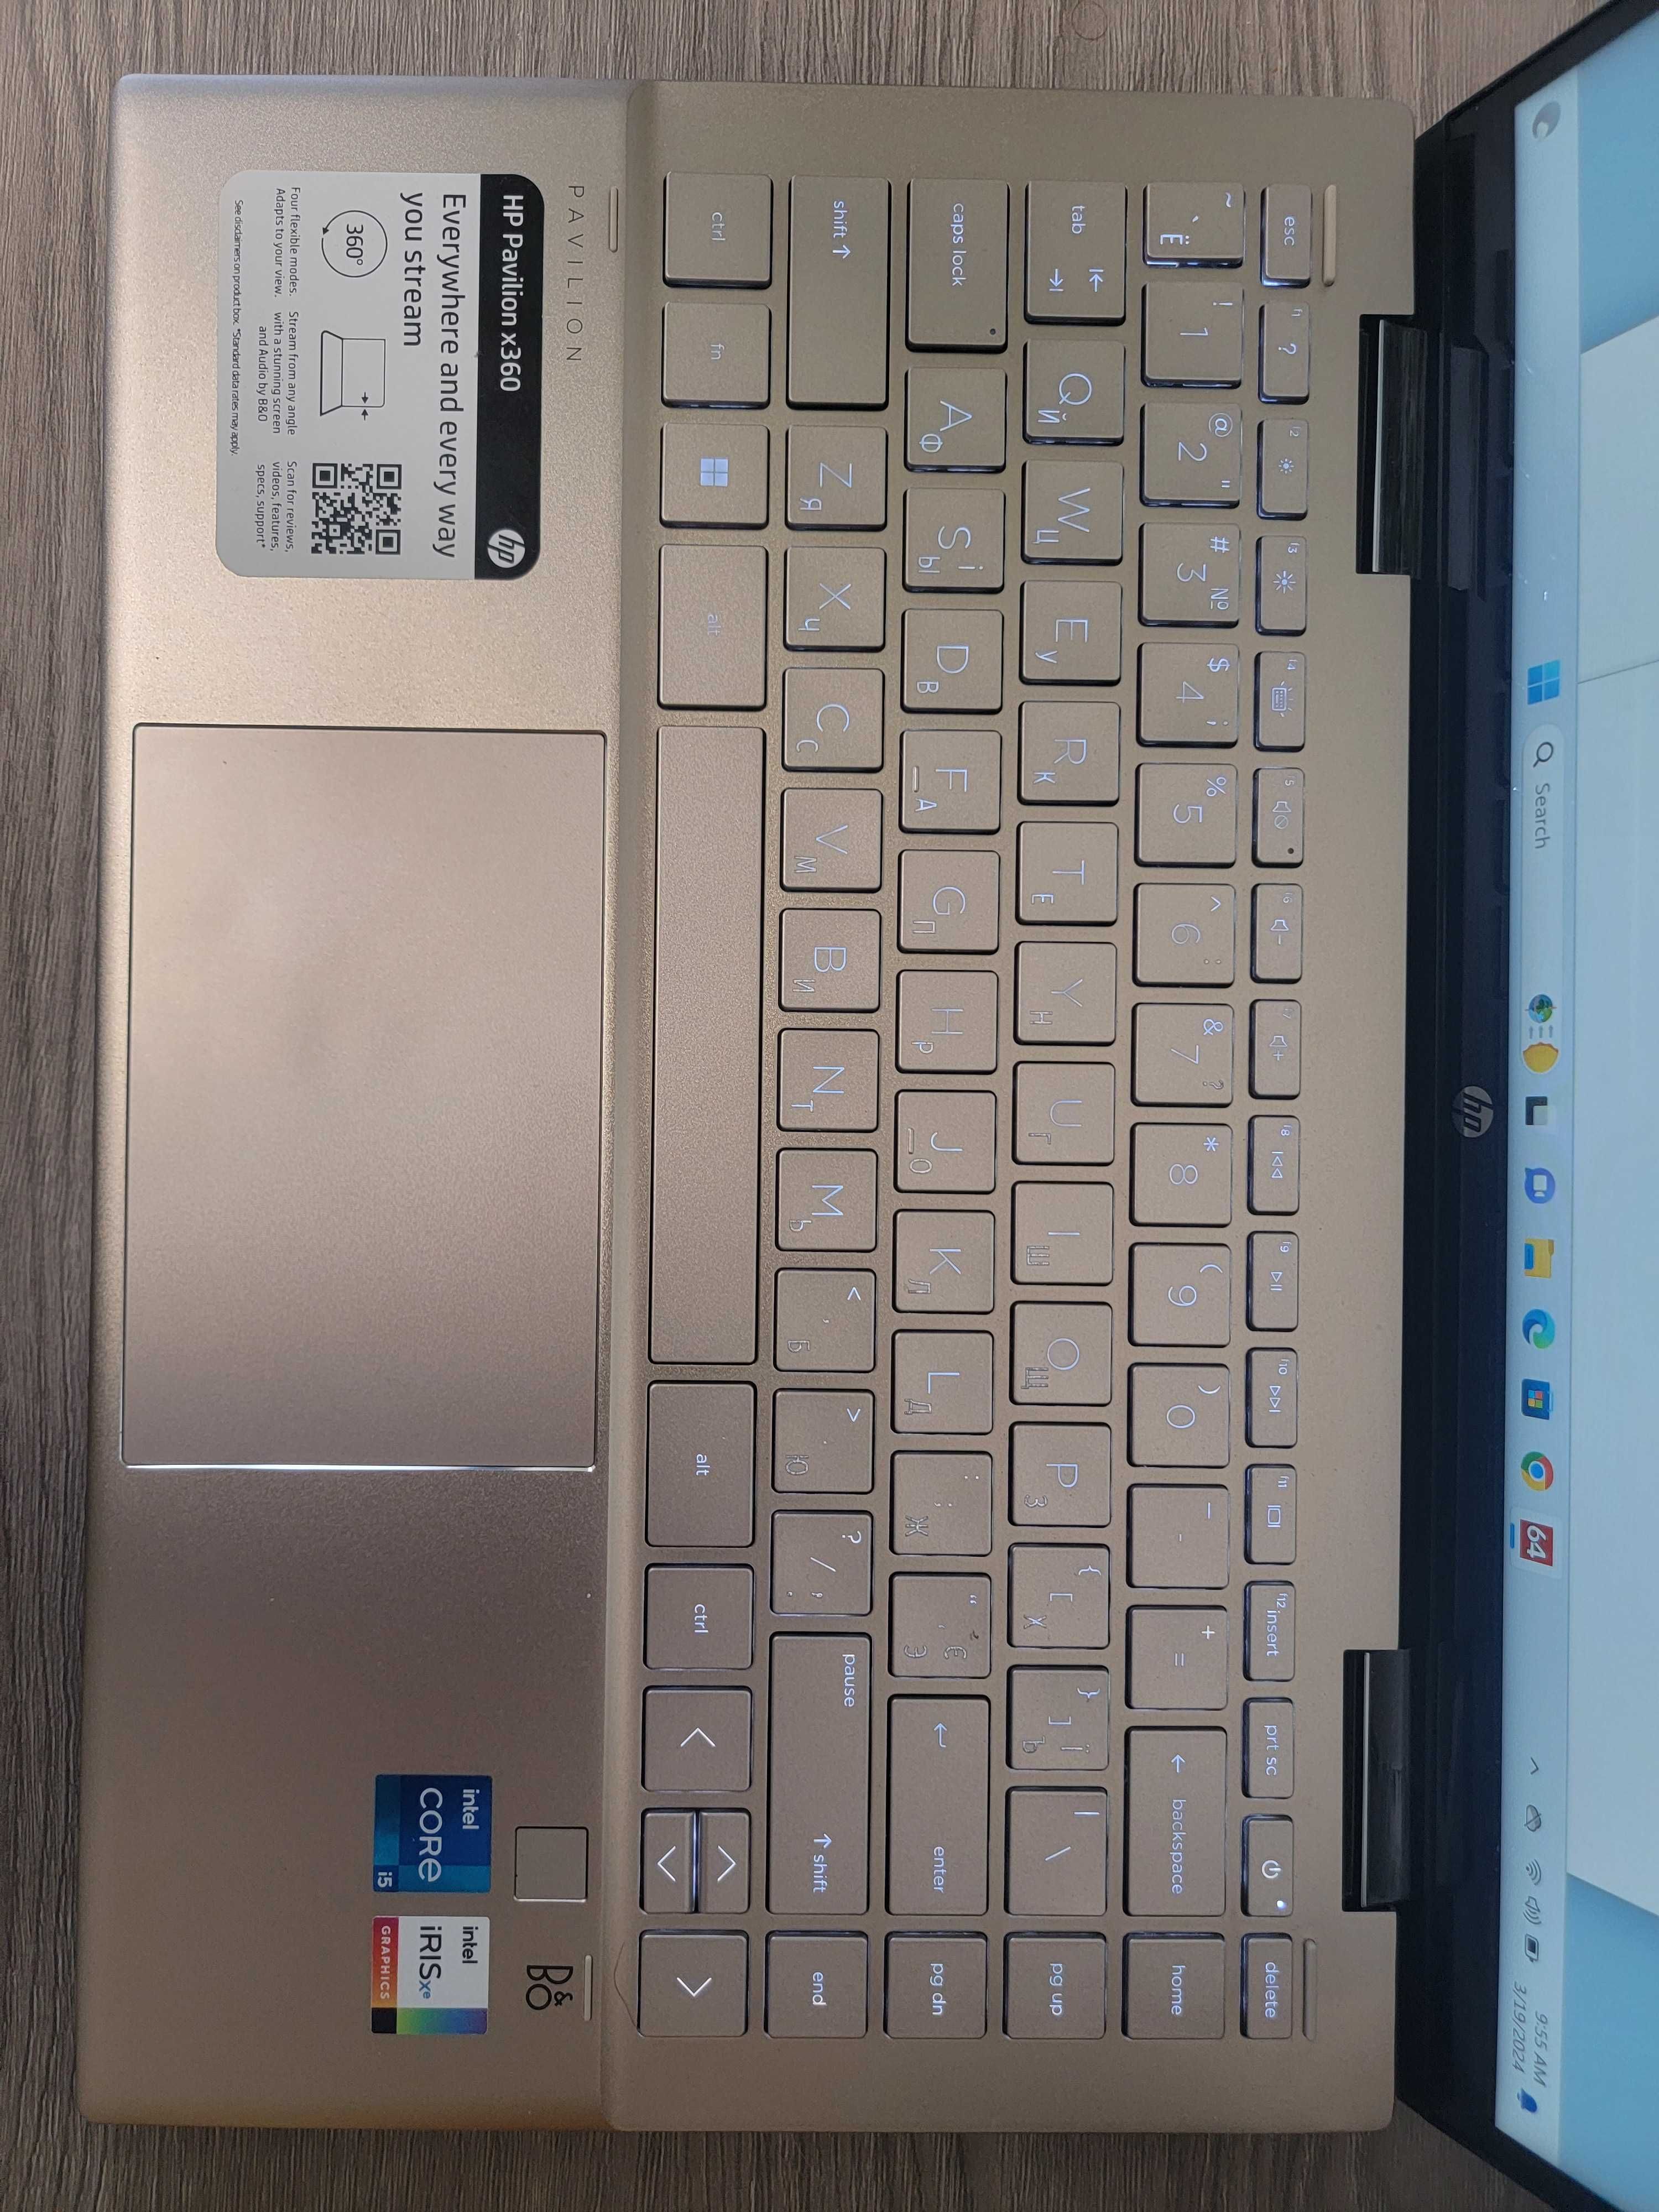 Сенсорний ноутбук HP PAVILION X360 I5-1155G7 2.5GHZ 8GB RAM 512GB